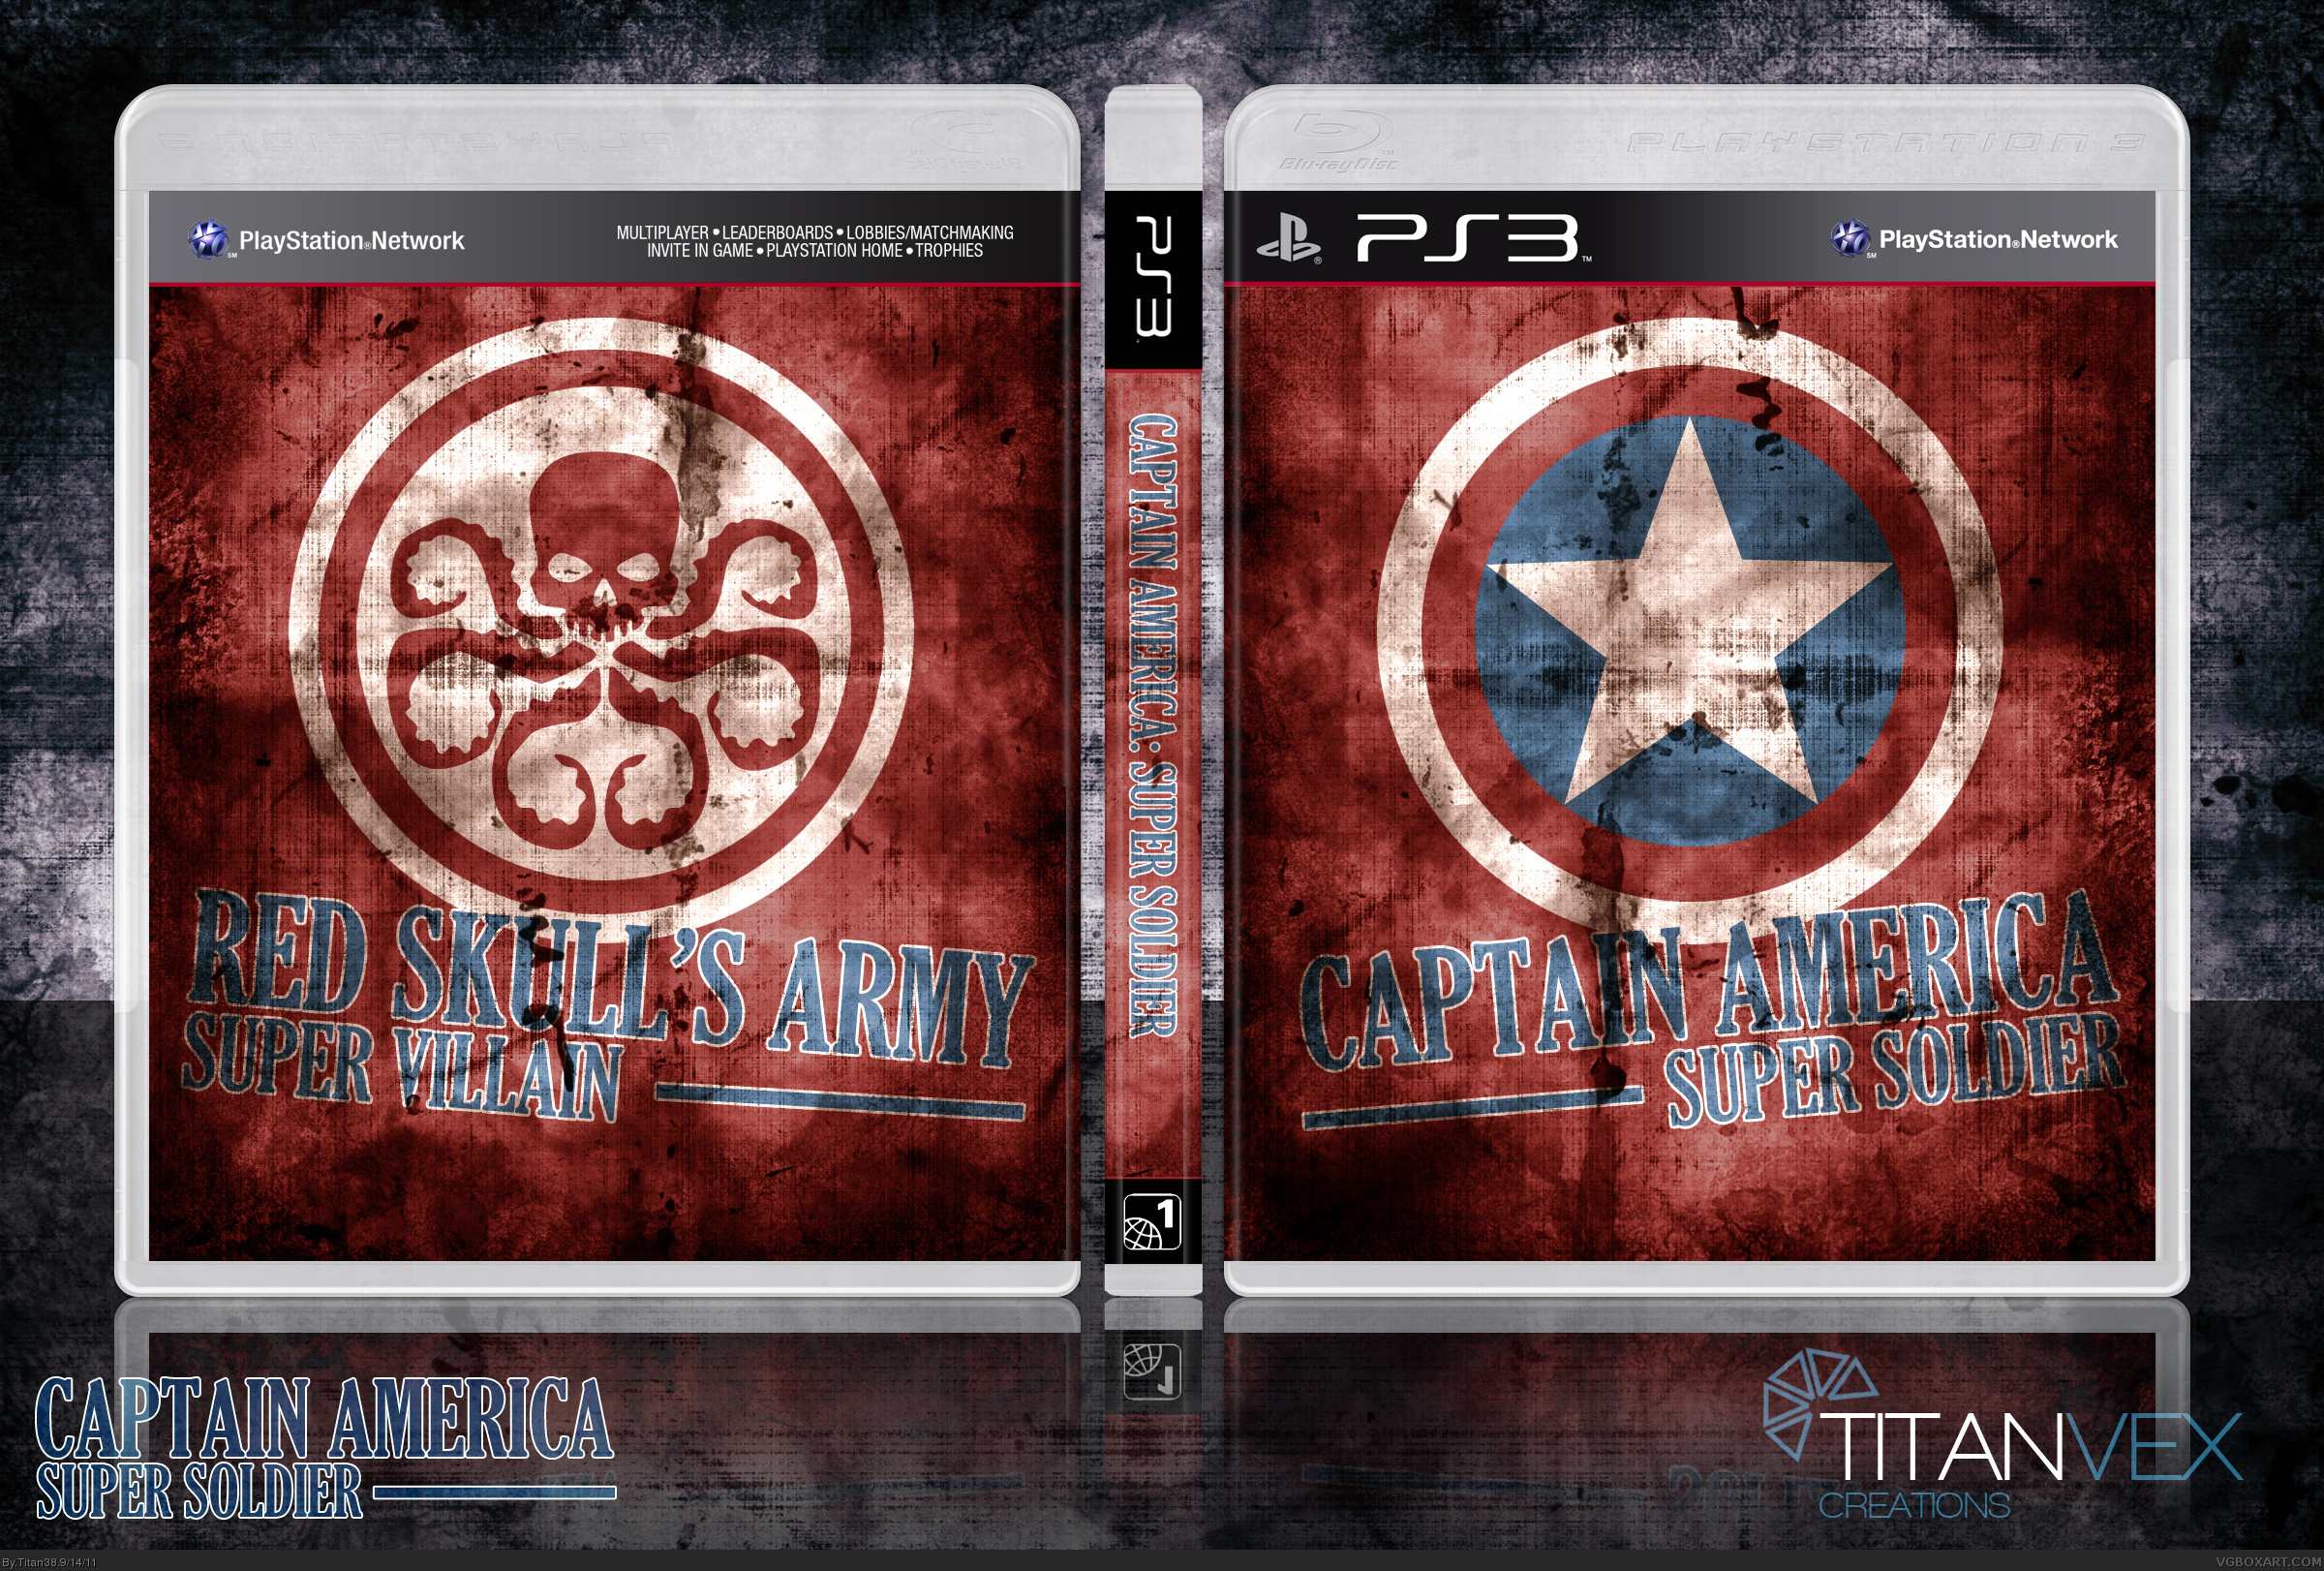 Captain America: Super Soldier box cover